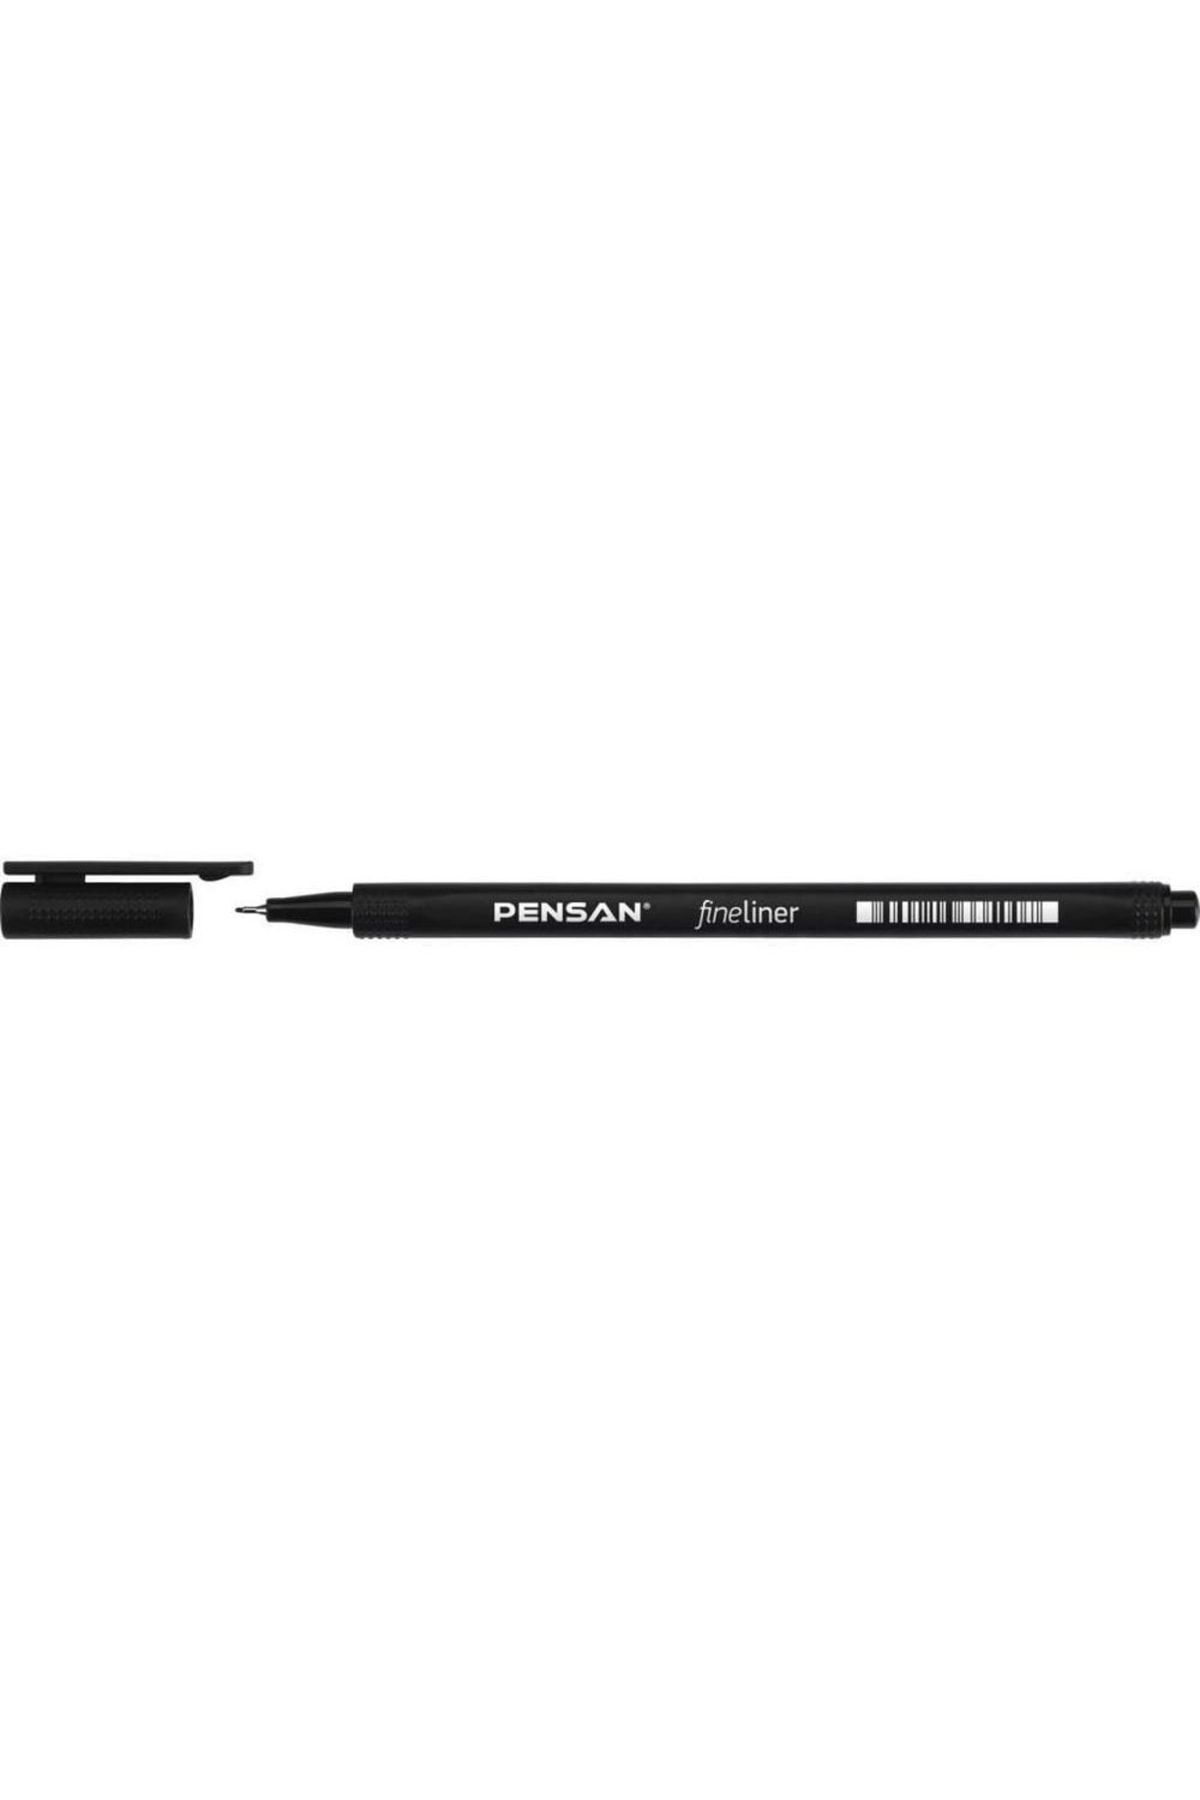 Pensan Fineliner Keçe Uç Kalem Siyah 0,4mm 6500 (10 Lu Paket)